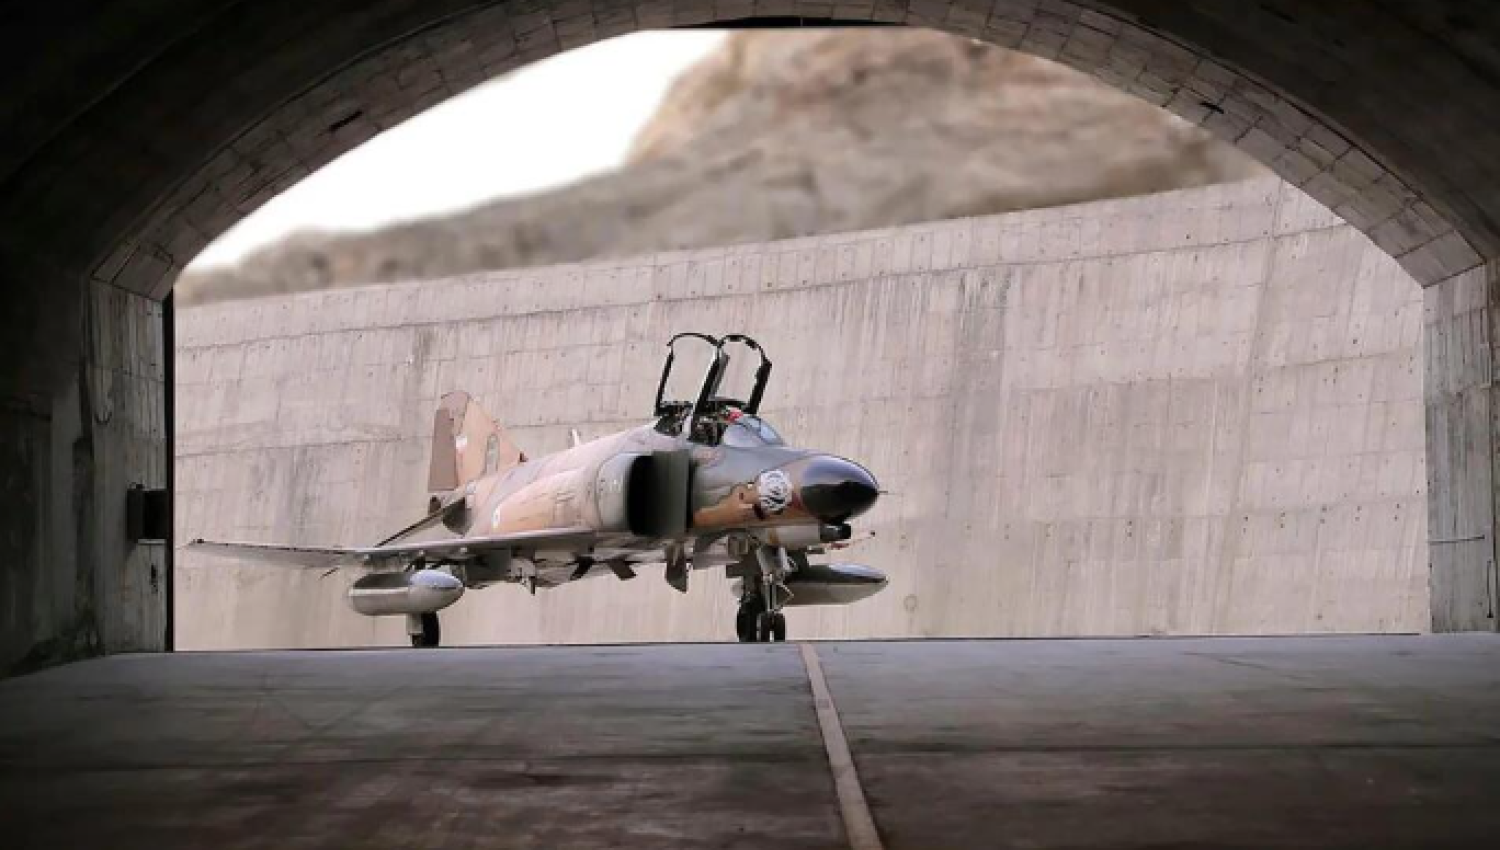 ממטוסים ישנים עד כטב"מים מתקדמים: מהן היכולות הצבאיות של איראן?